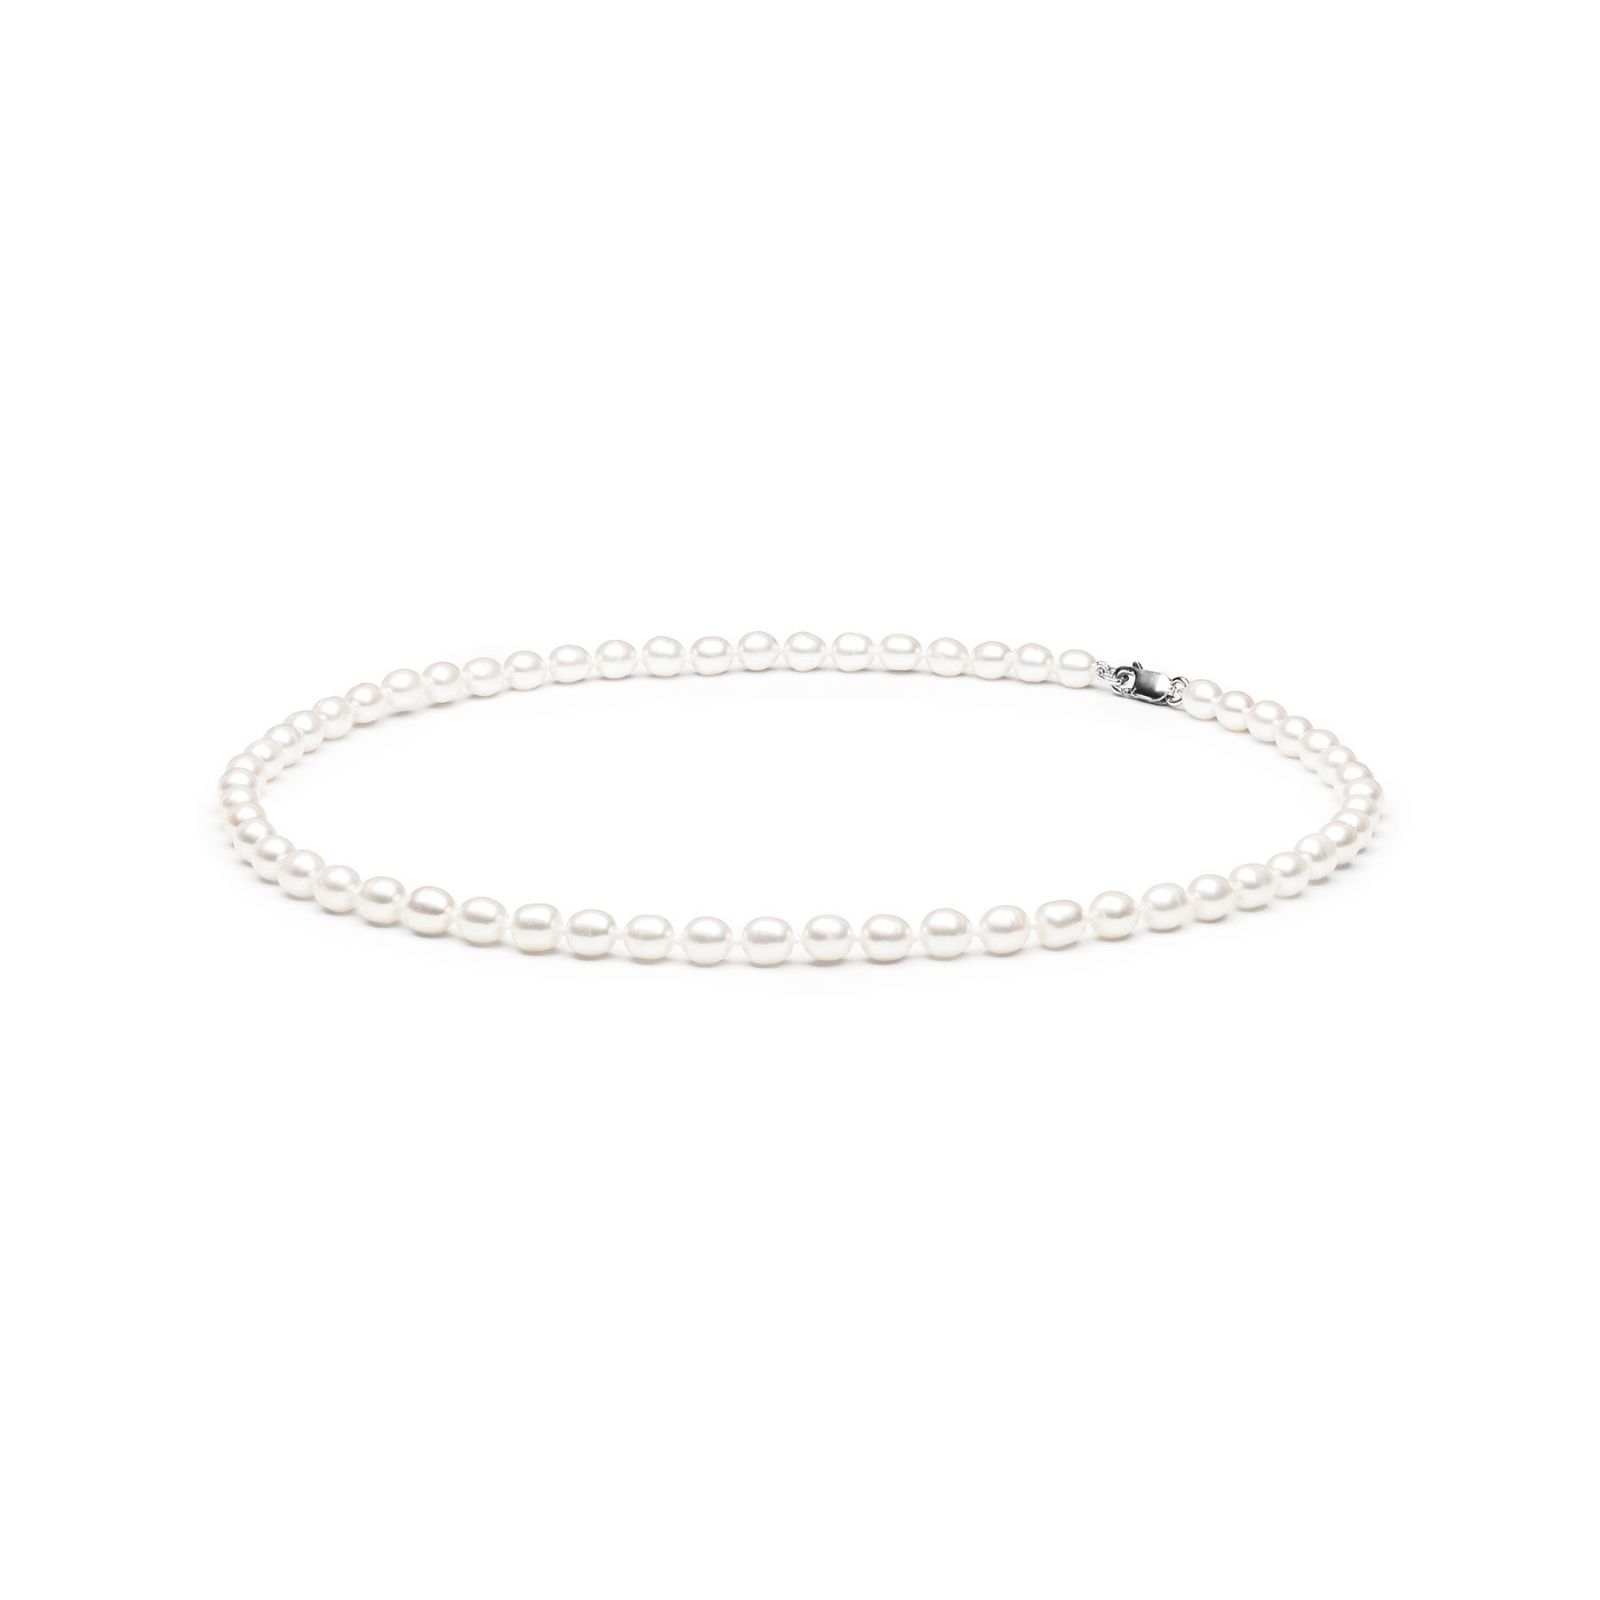 fcw365 minimalistinis sidabrinis perlu verinys tikrais mazias perlais perlinis kaklo papuosalas dovanos gimtadienio jubiliejaus vestuciu metiniu moterims zmonai merginai meiluzei sesei dukrai mamai 14r7mmRyziai45cm